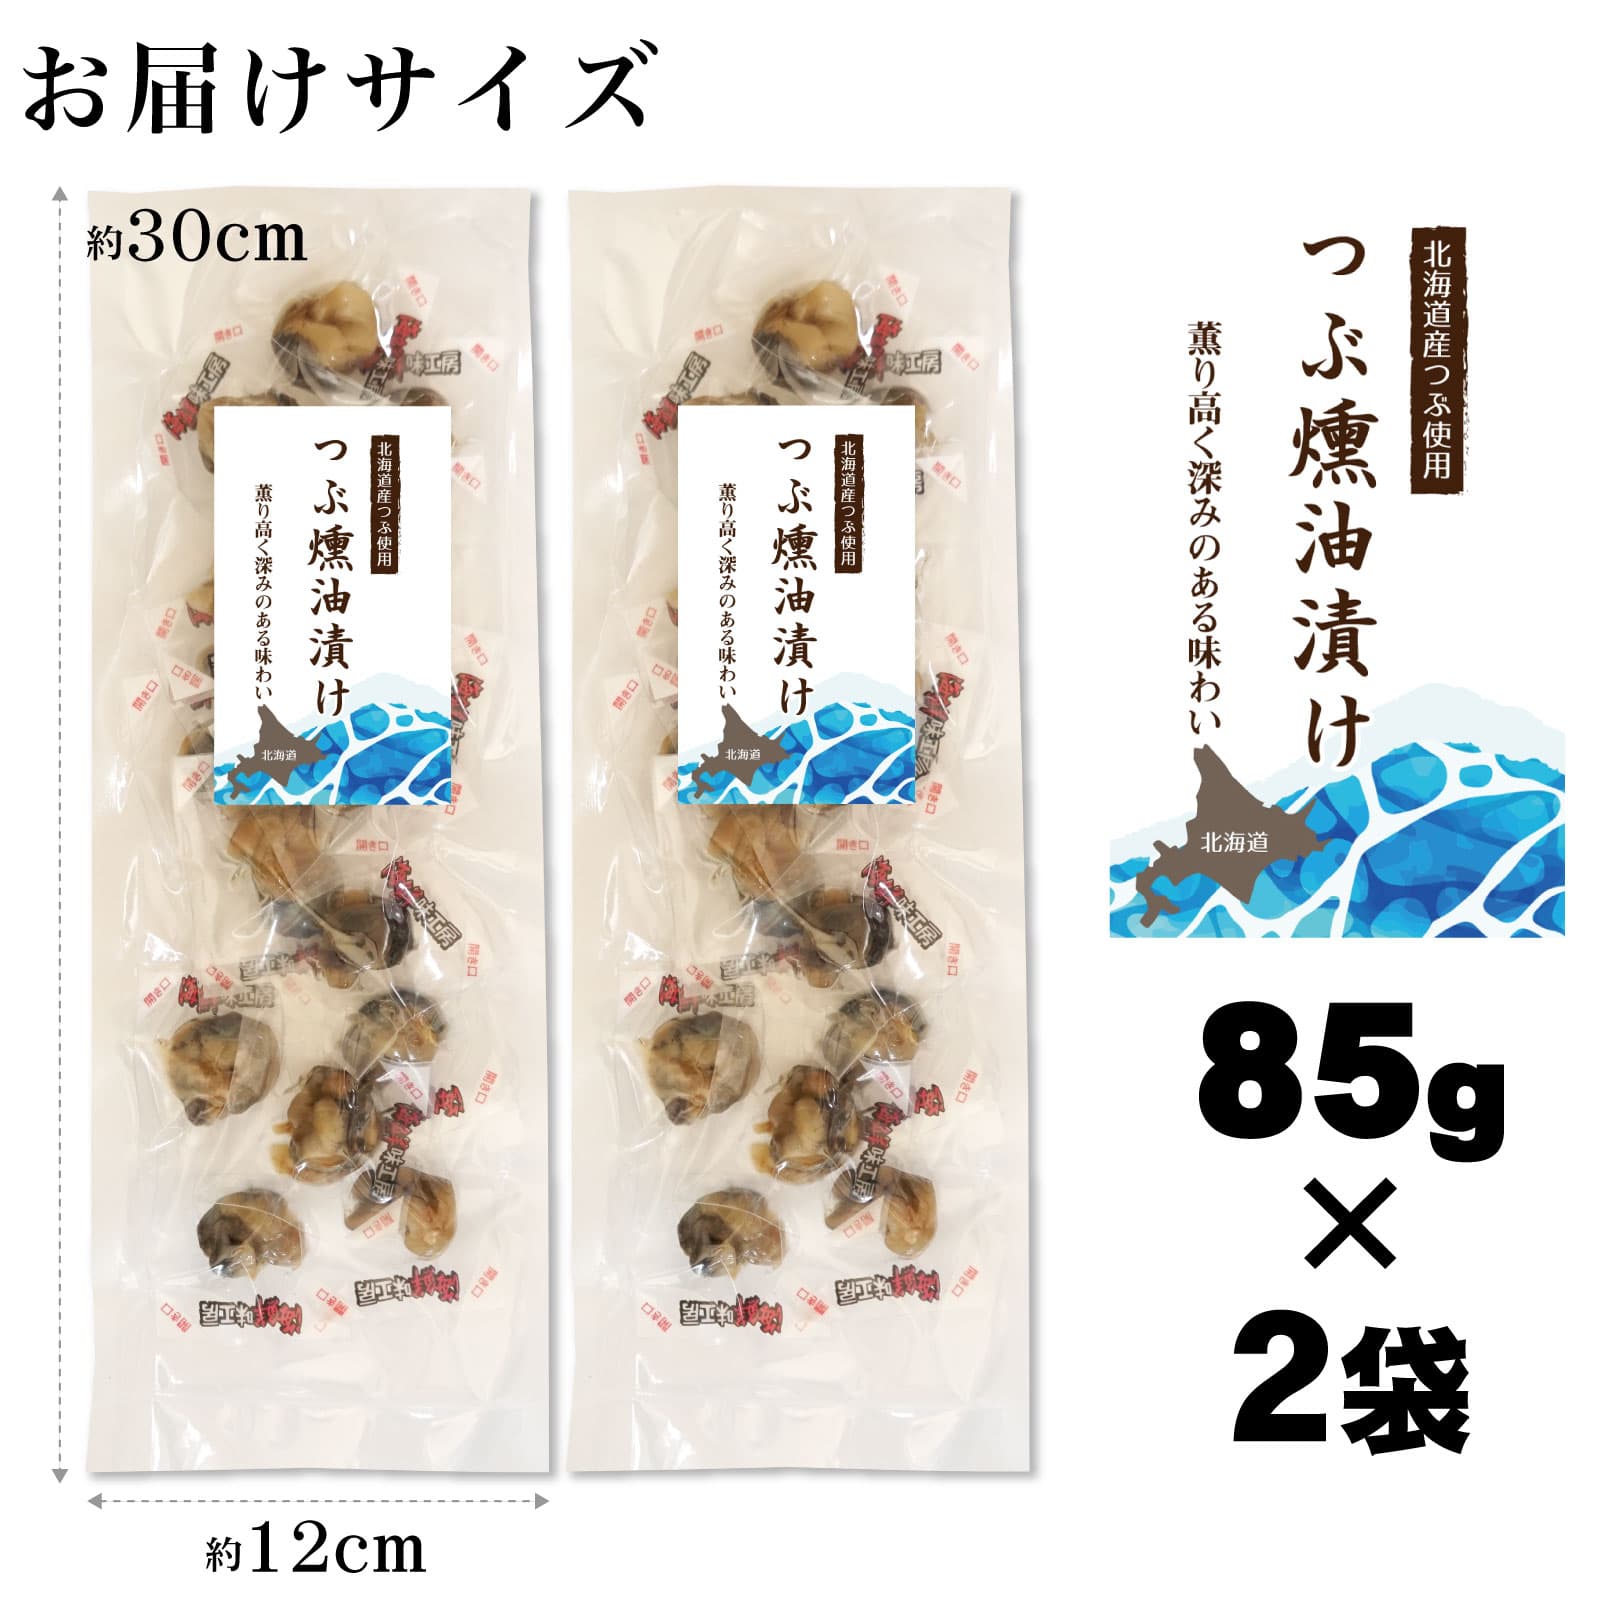  закуска ... масло .85g×2 пакет Hokkaido производство цубугаи копчение масло запись ..... нет влажный еда чувство один . размер для бизнеса 